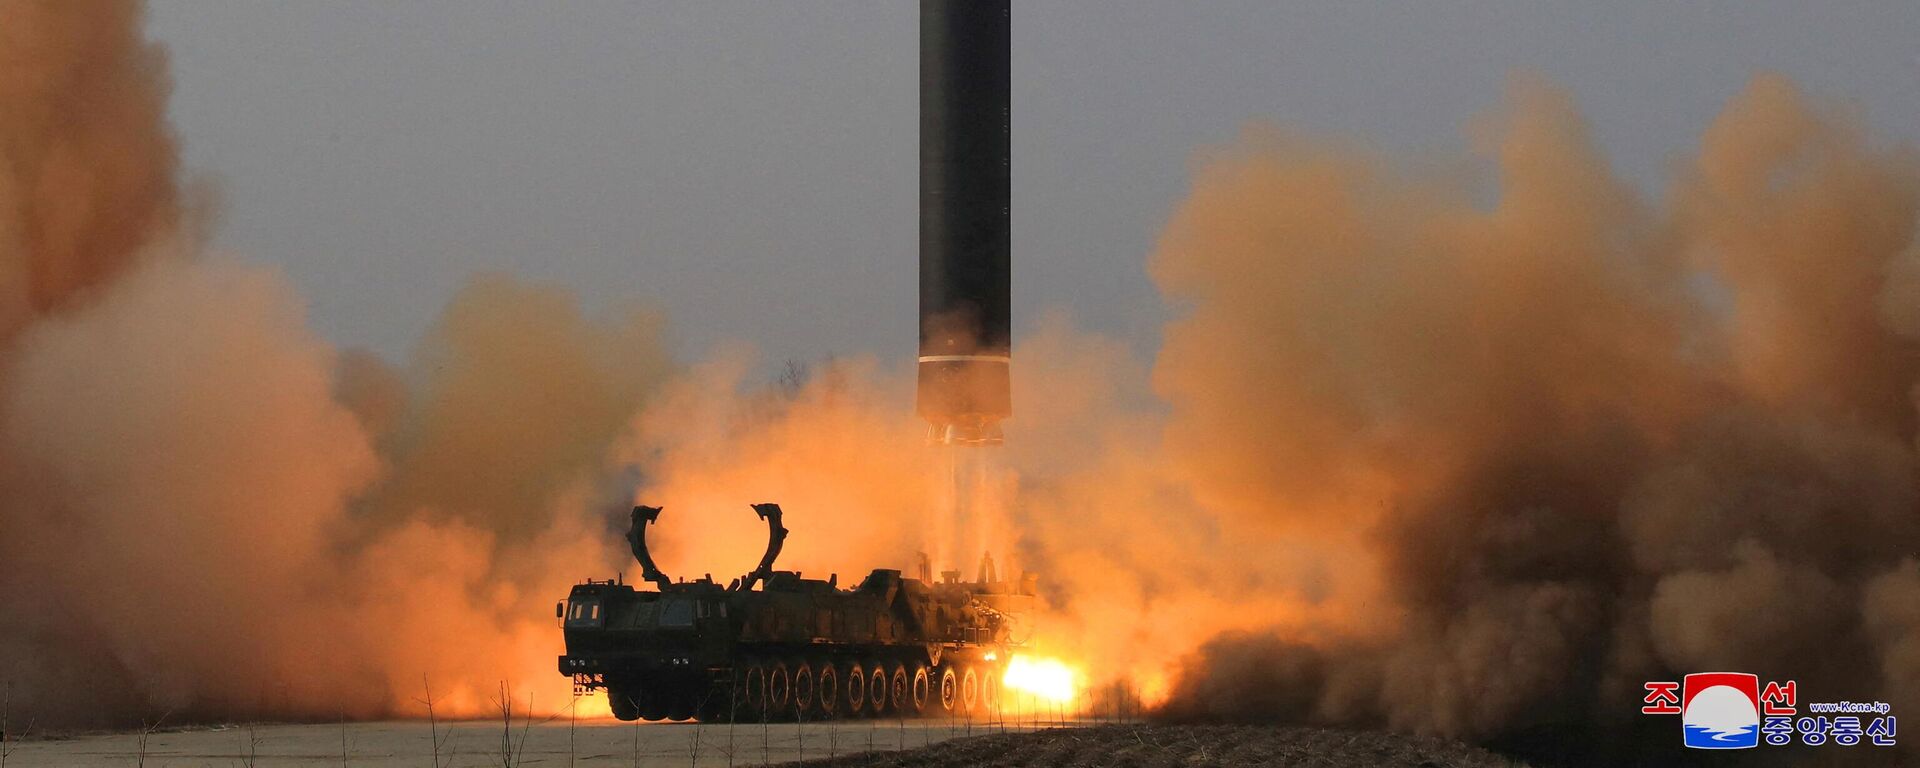 67.5 dakika boyunca maksimum 6248.5 km irtifada 1090 km menzille uçan Hwasong-17, Kuzey Kore'nin önceki kıtalararası balistik füze (ICBM) denemelerinden farklı olarak, doğrudan bir taşıyıcı, erektör, fırlatıcı (TEL) aracından fırlatıldı. Reuters'e konuşan uzmanlar Hwasong-17'yi, 'canavar füze', 'dünyadaki en büyük mobil, sıvı yakıtlı ICBM' diye niteledi.  - Sputnik Türkiye, 1920, 16.03.2023